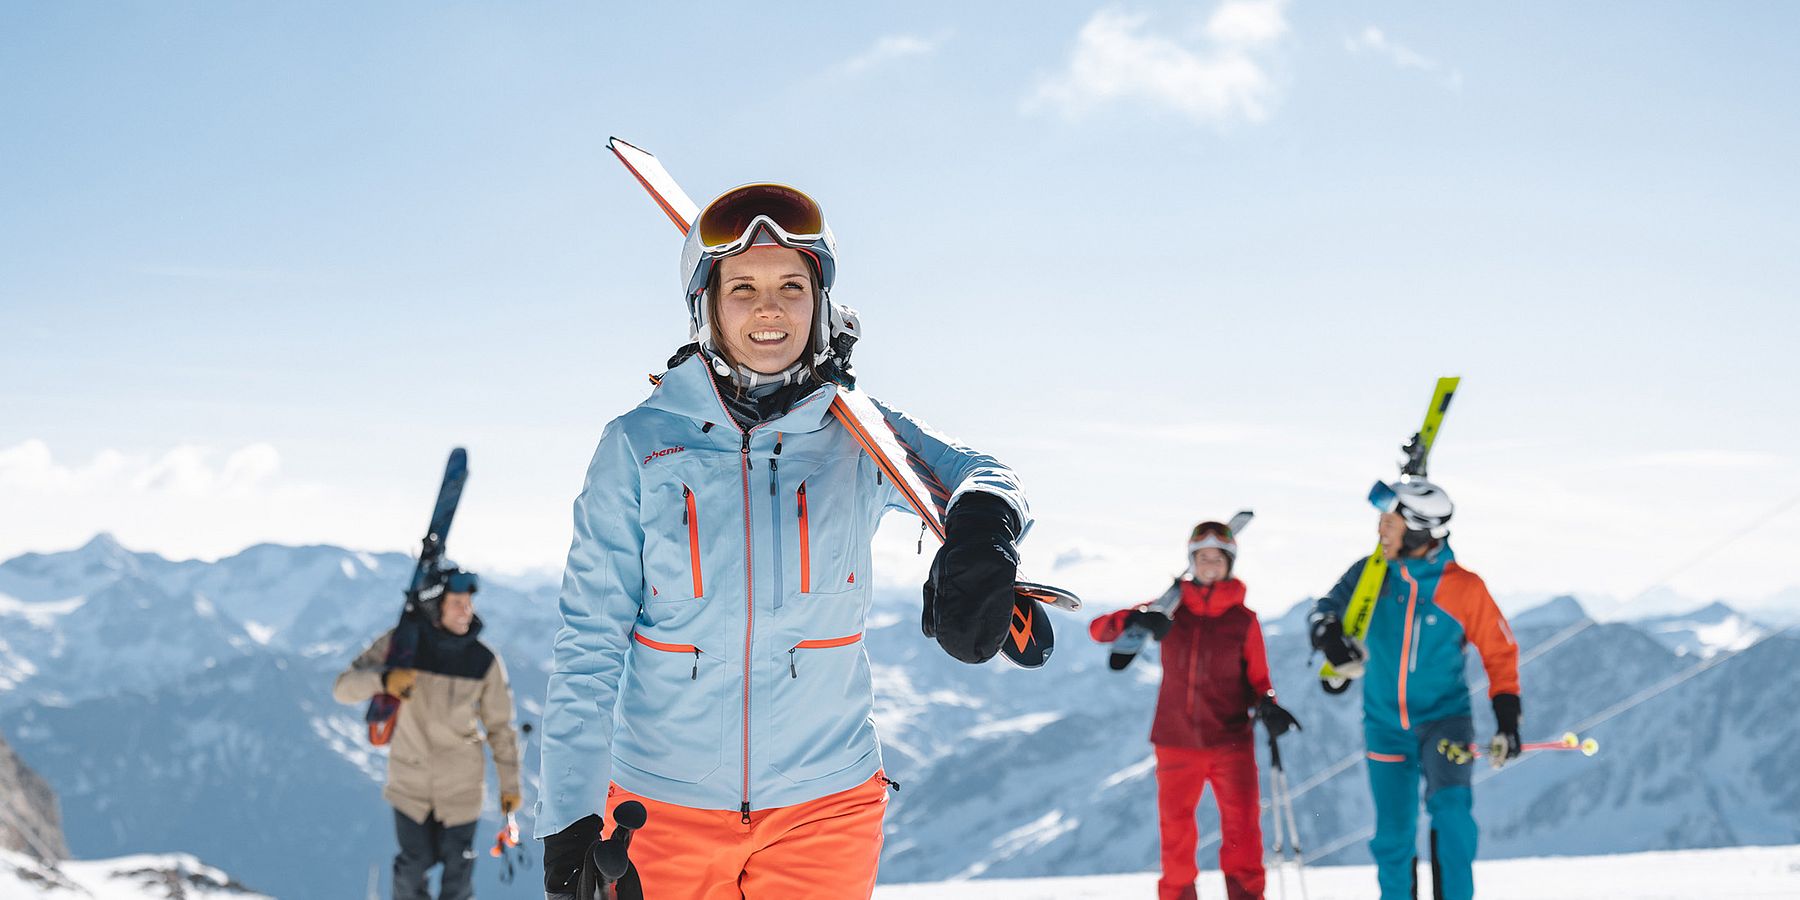 Skifahren in Hochsölden, Ötztal - Aktive Wintererfahrung inmitten der atemberaubenden Alpenlandschaft.